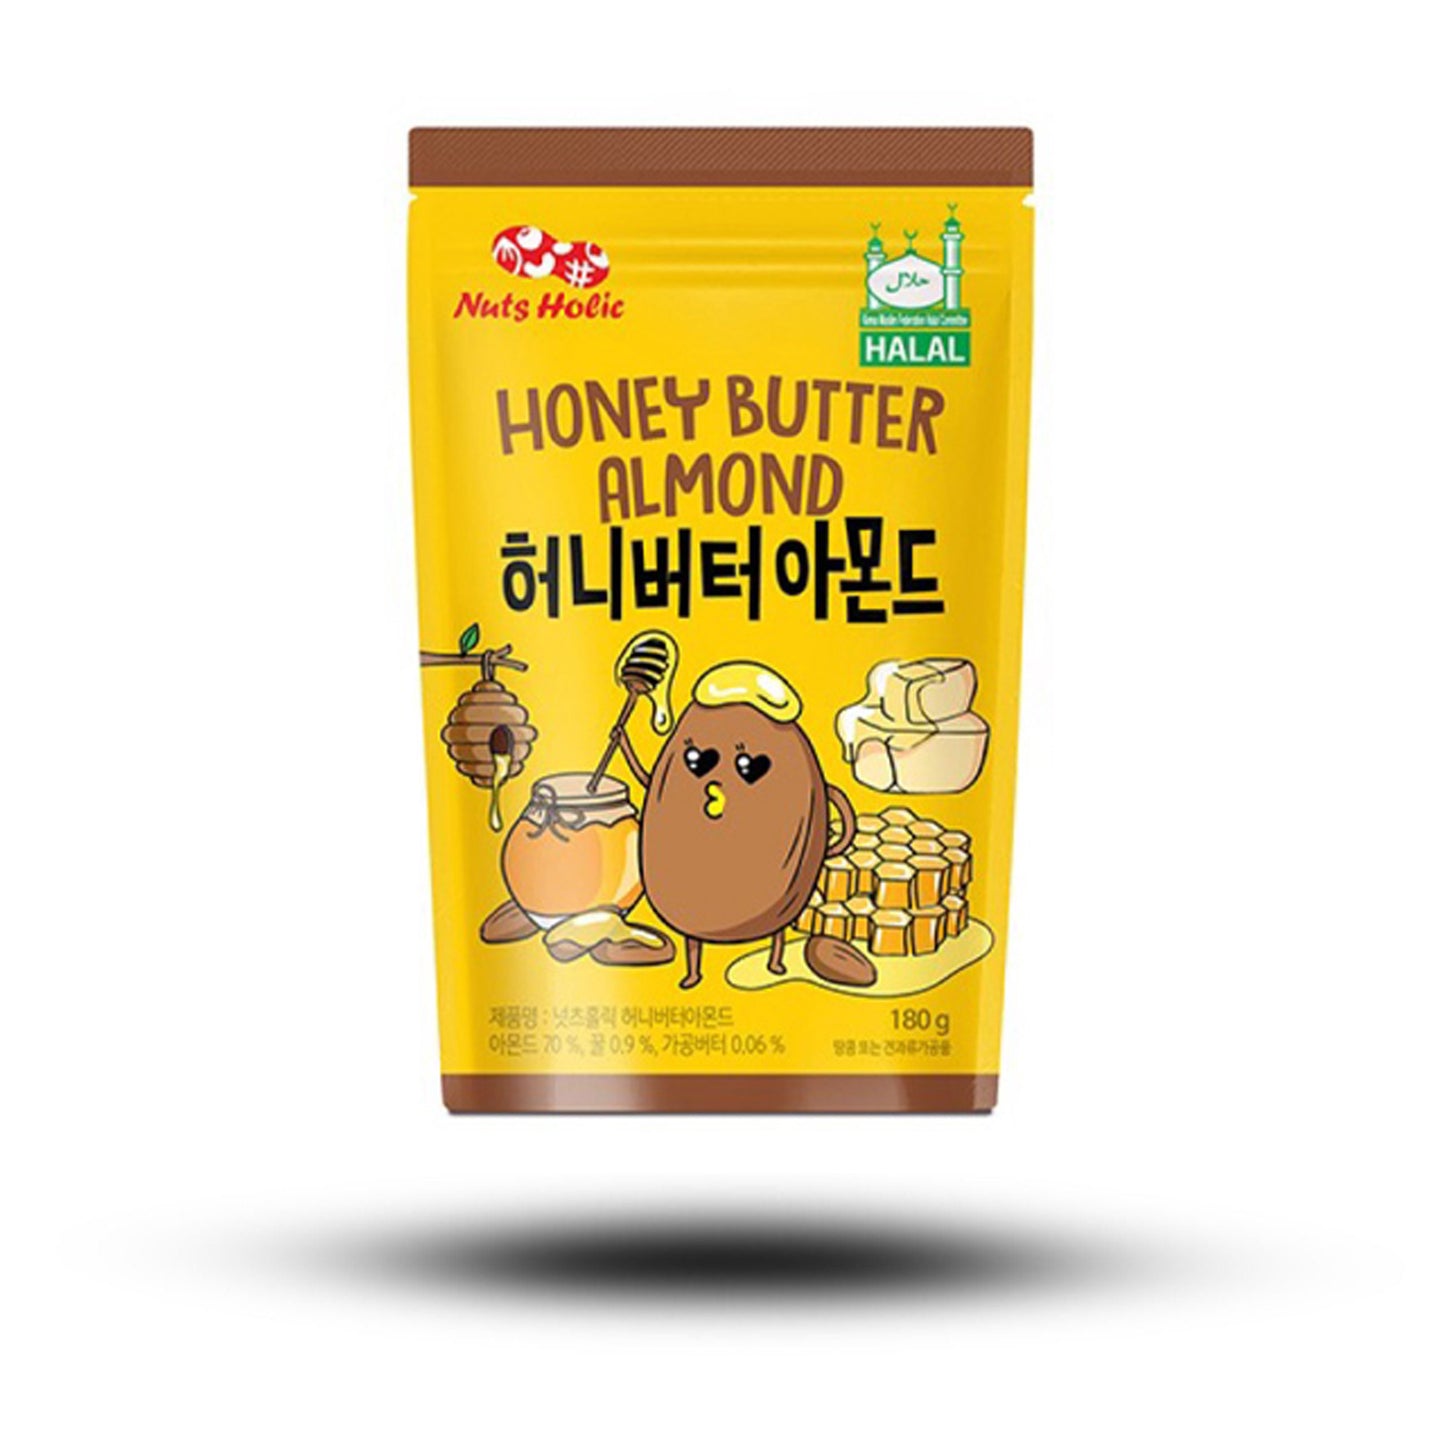 NutsHolic Honey Almond 180g